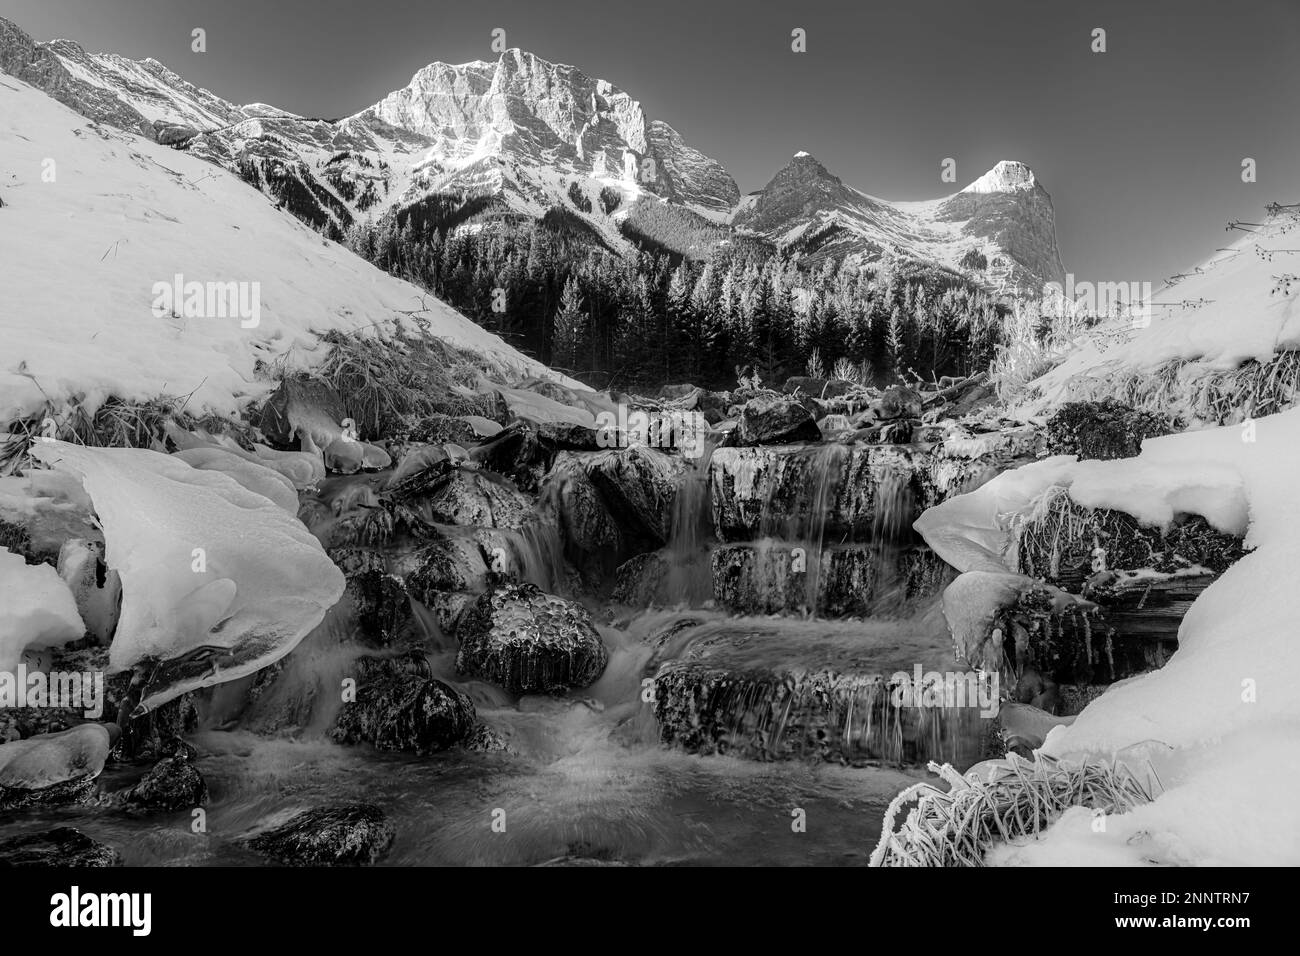 Sulfur Creek scorre attraverso il paesaggio di montagna ghiacciato in bianco e nero, Canmore, Alberta, Canada Foto Stock